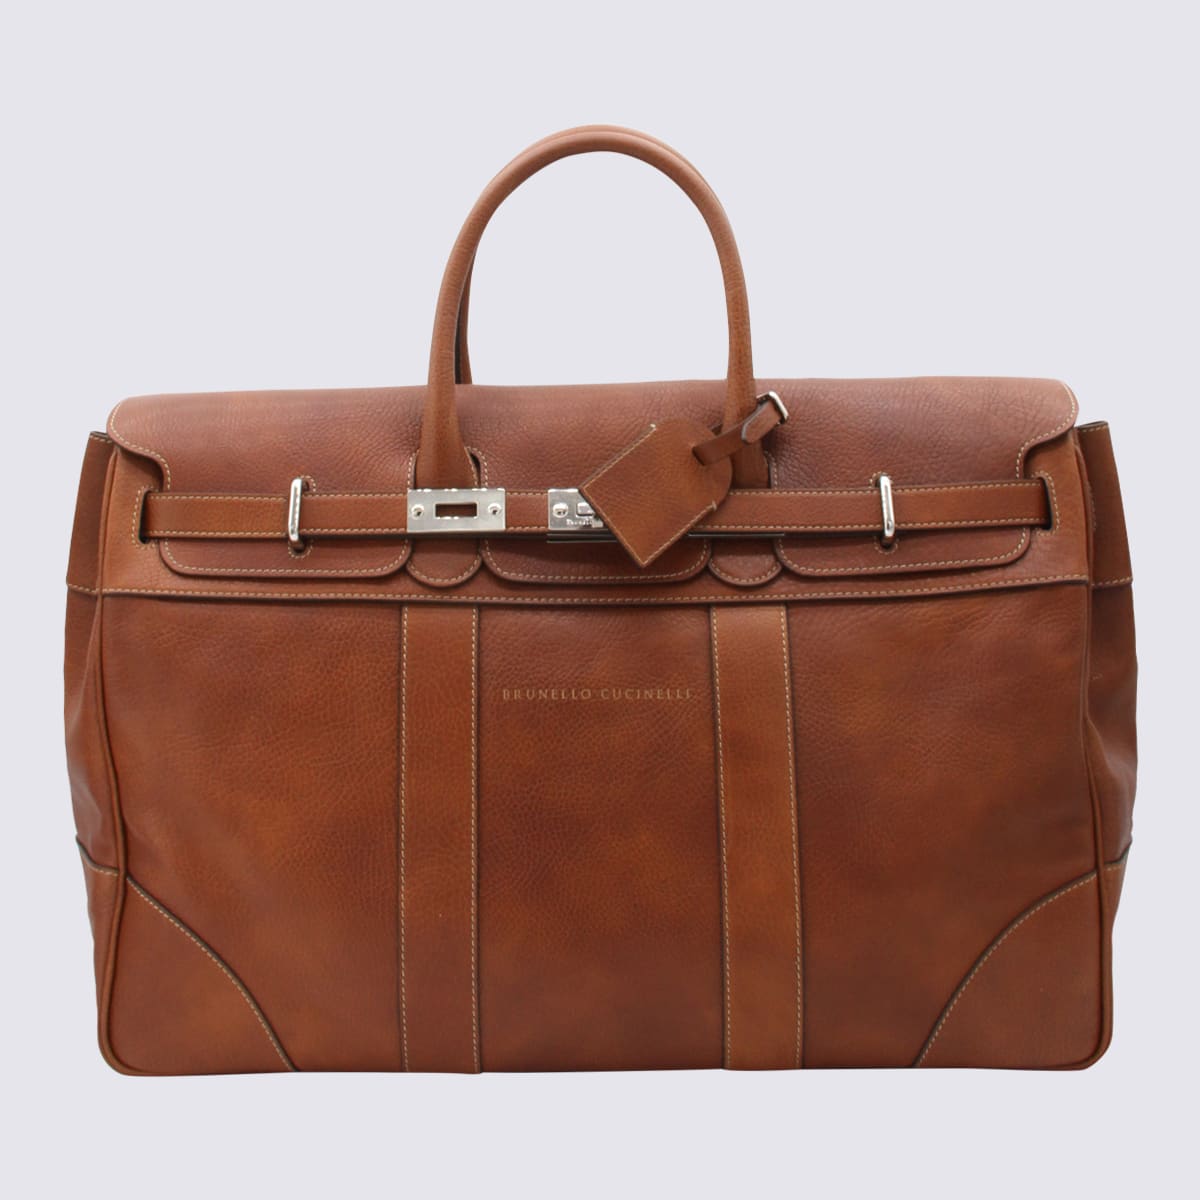 Brown Leather Weekender Travel Bag